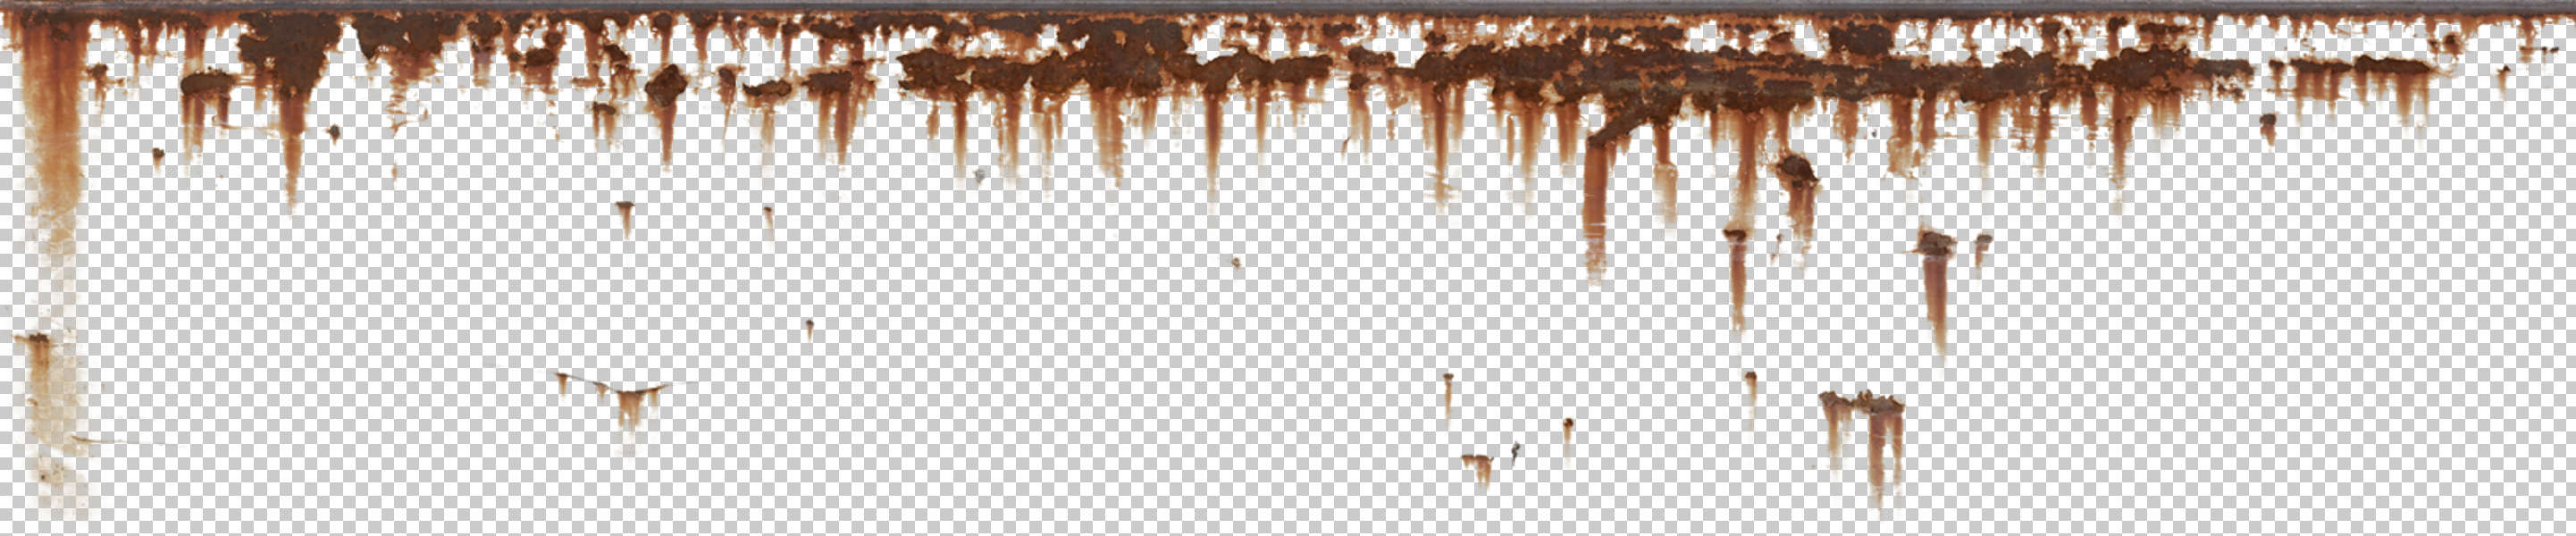 Rust alpha texture